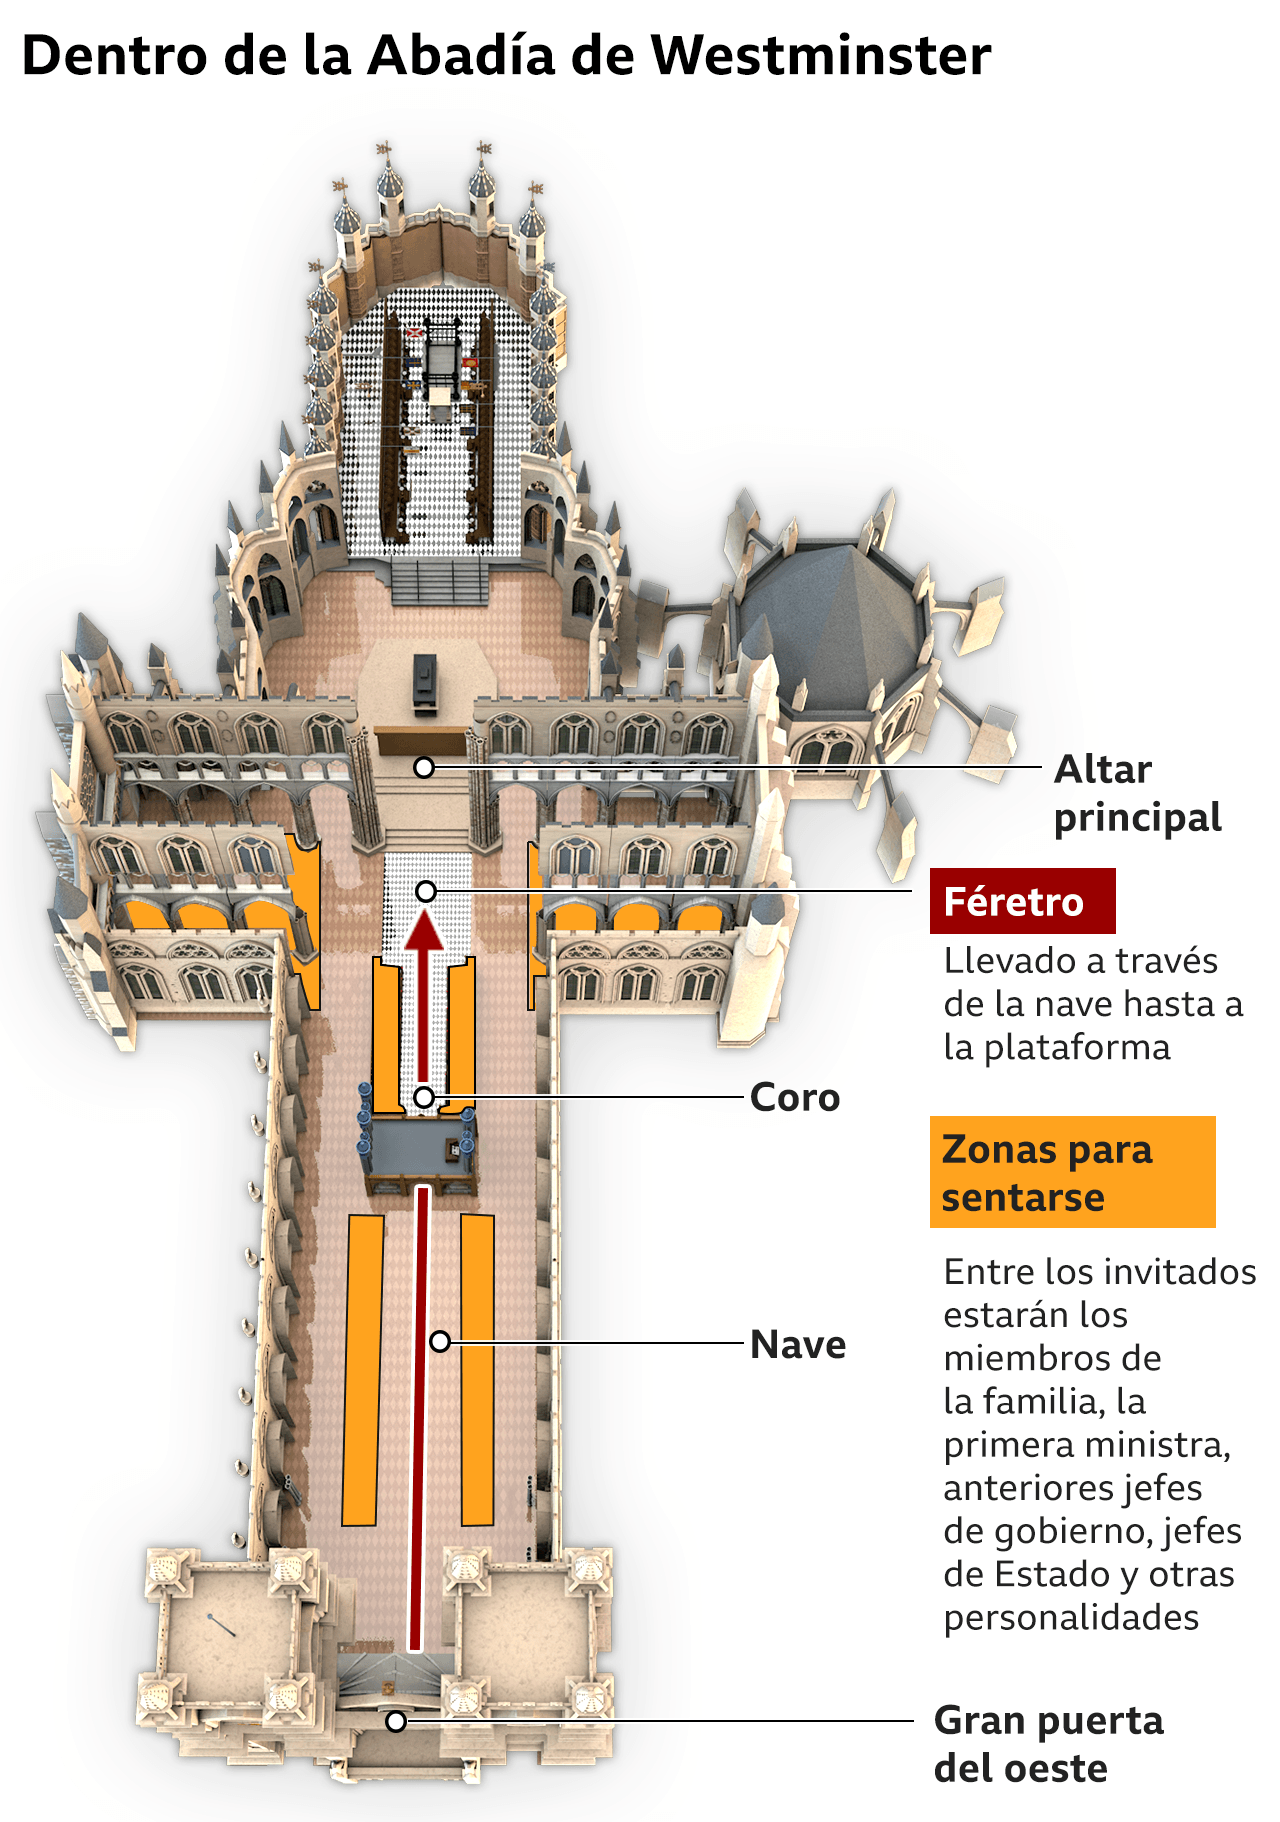 Gráfico sobre el interior de la abadía de Westminster.